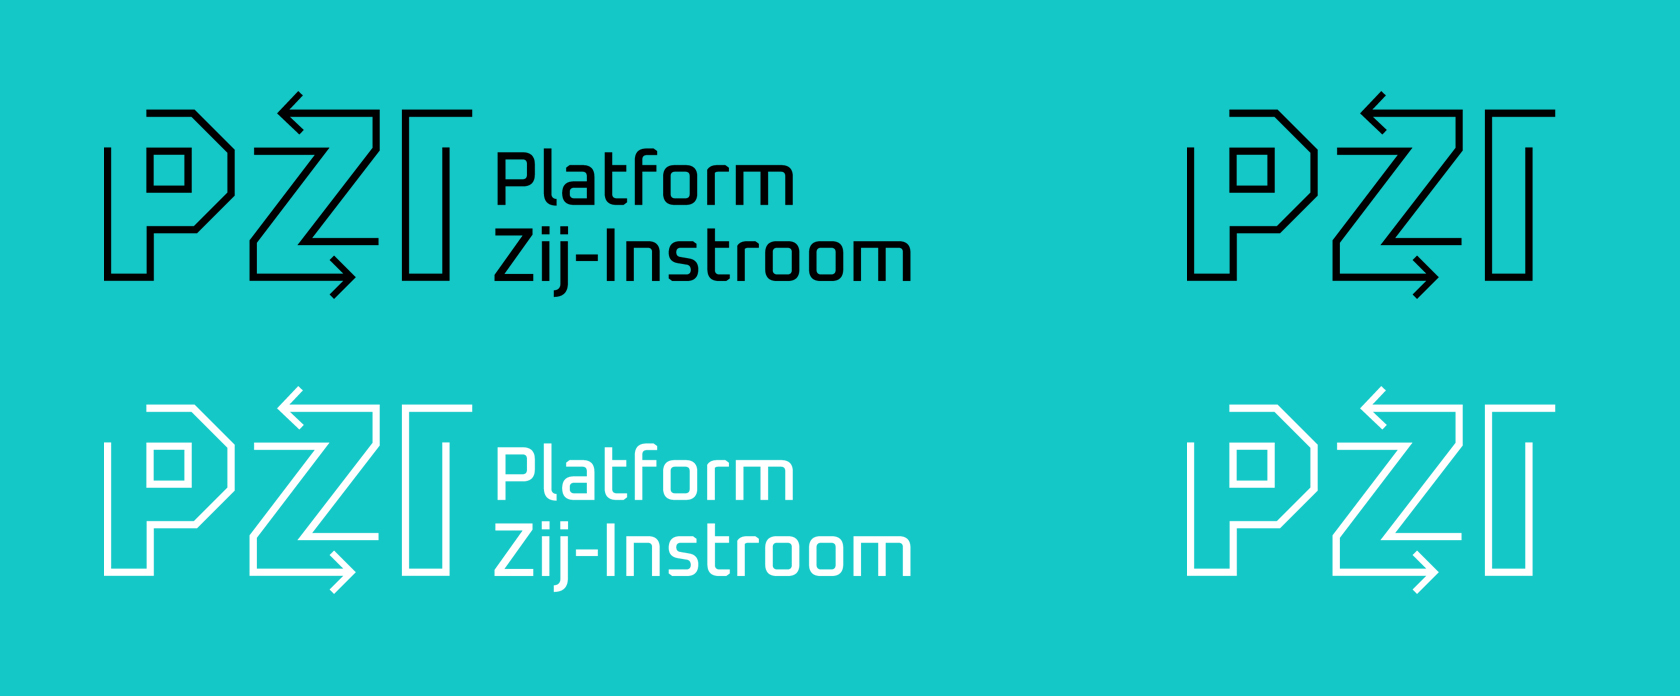 Platform Zij-Instroom logo